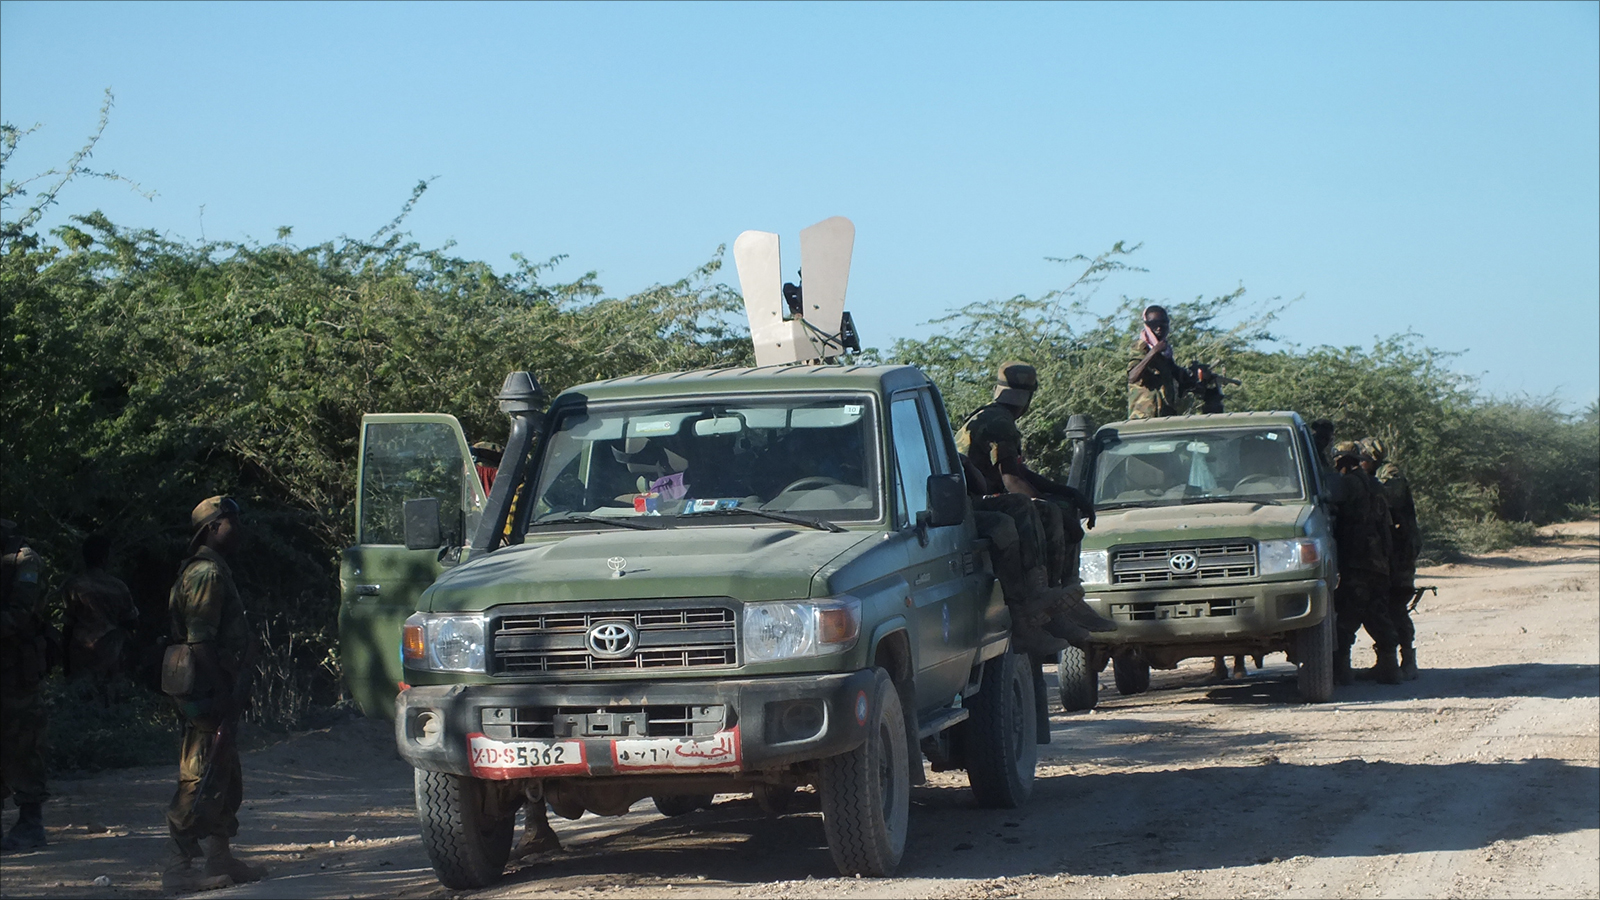 جنود من الجيش الصومالي في إحدى عملياتهم بجنوب الصومال(الجزيرة نت)